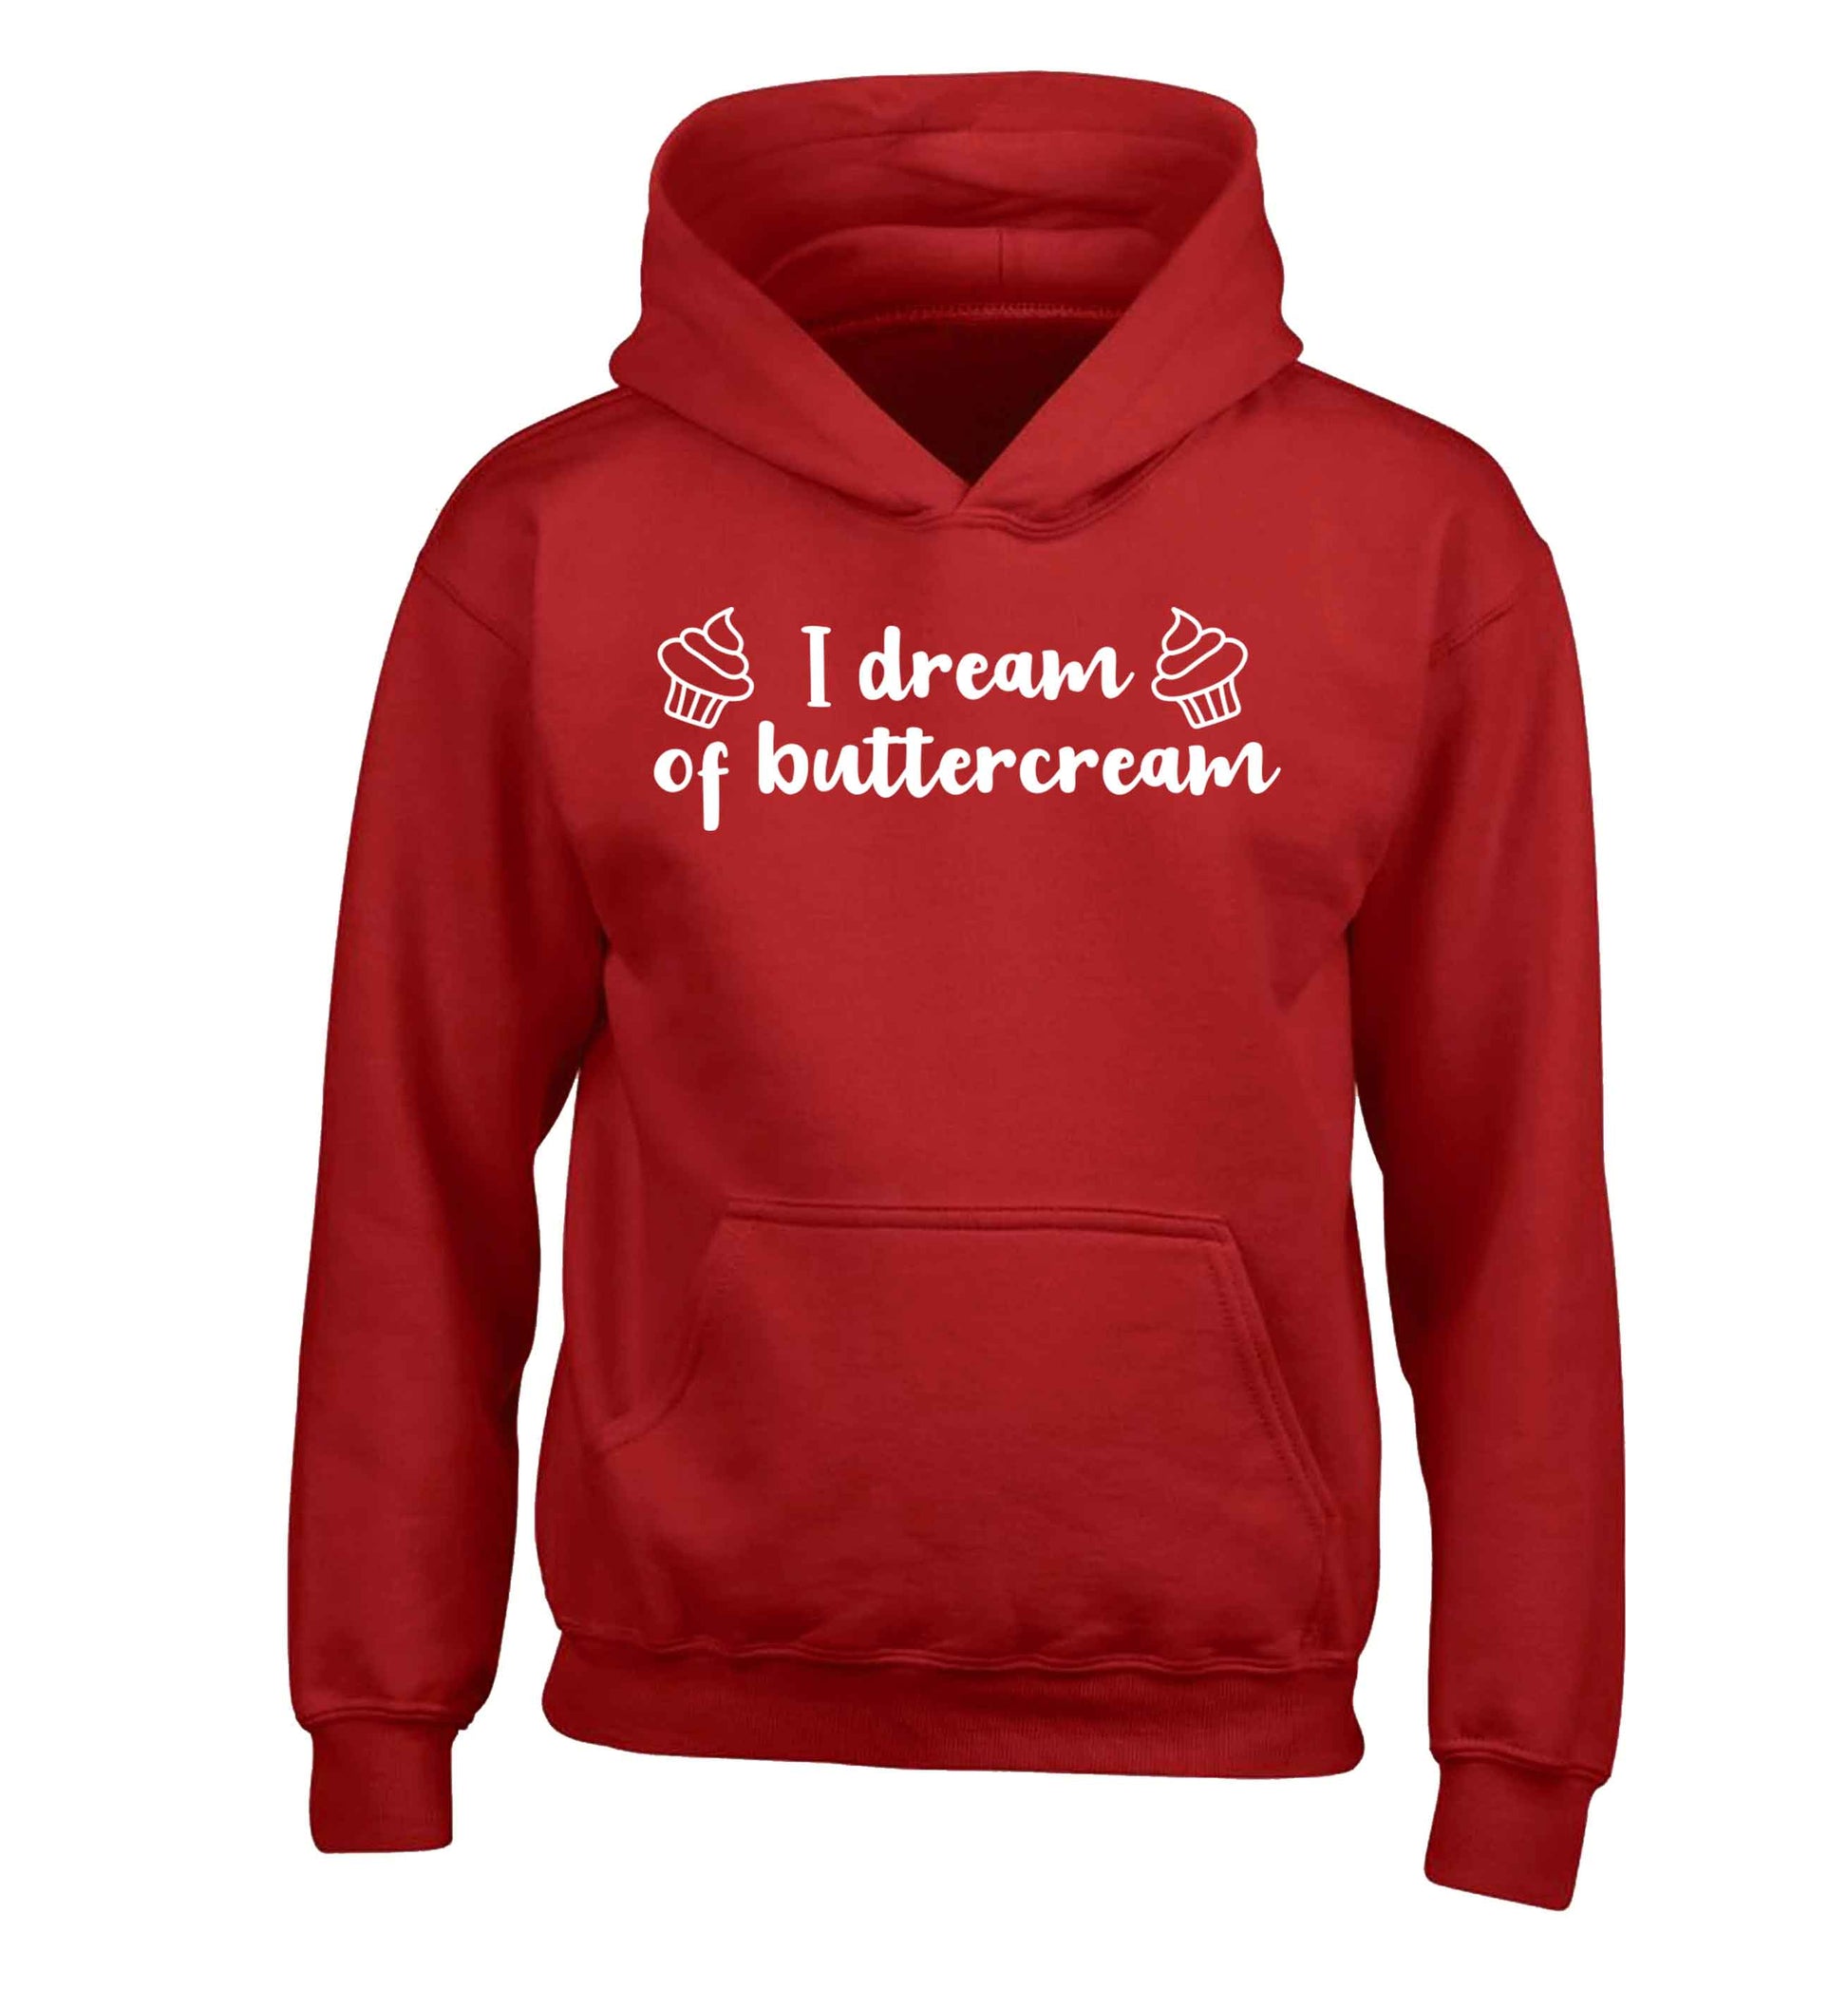 I dream of buttercream children's red hoodie 12-13 Years